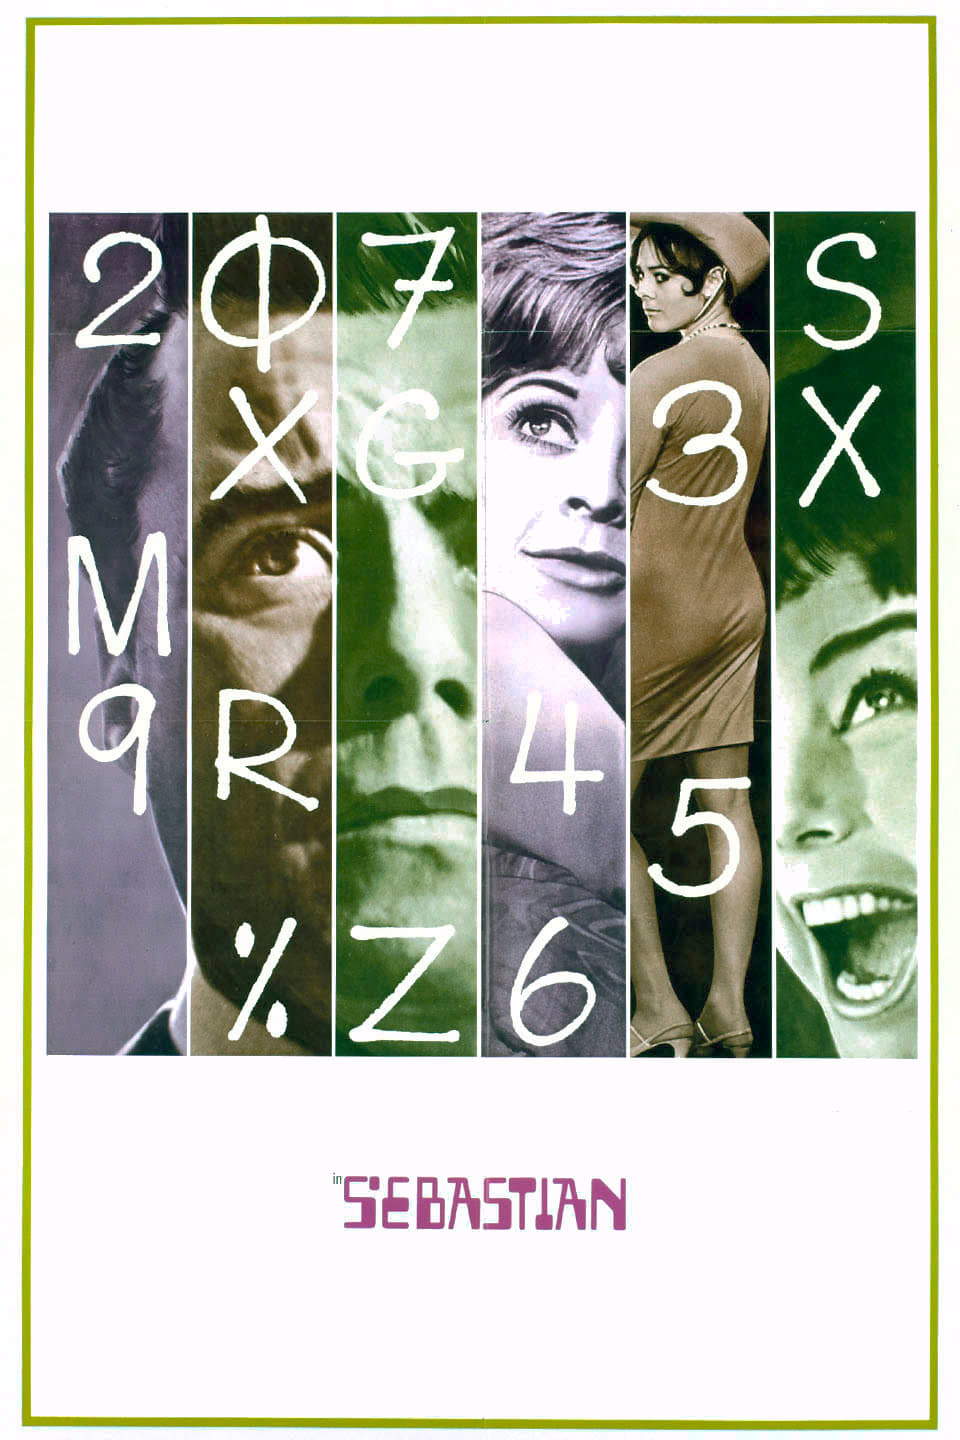 Sebastian (1968)